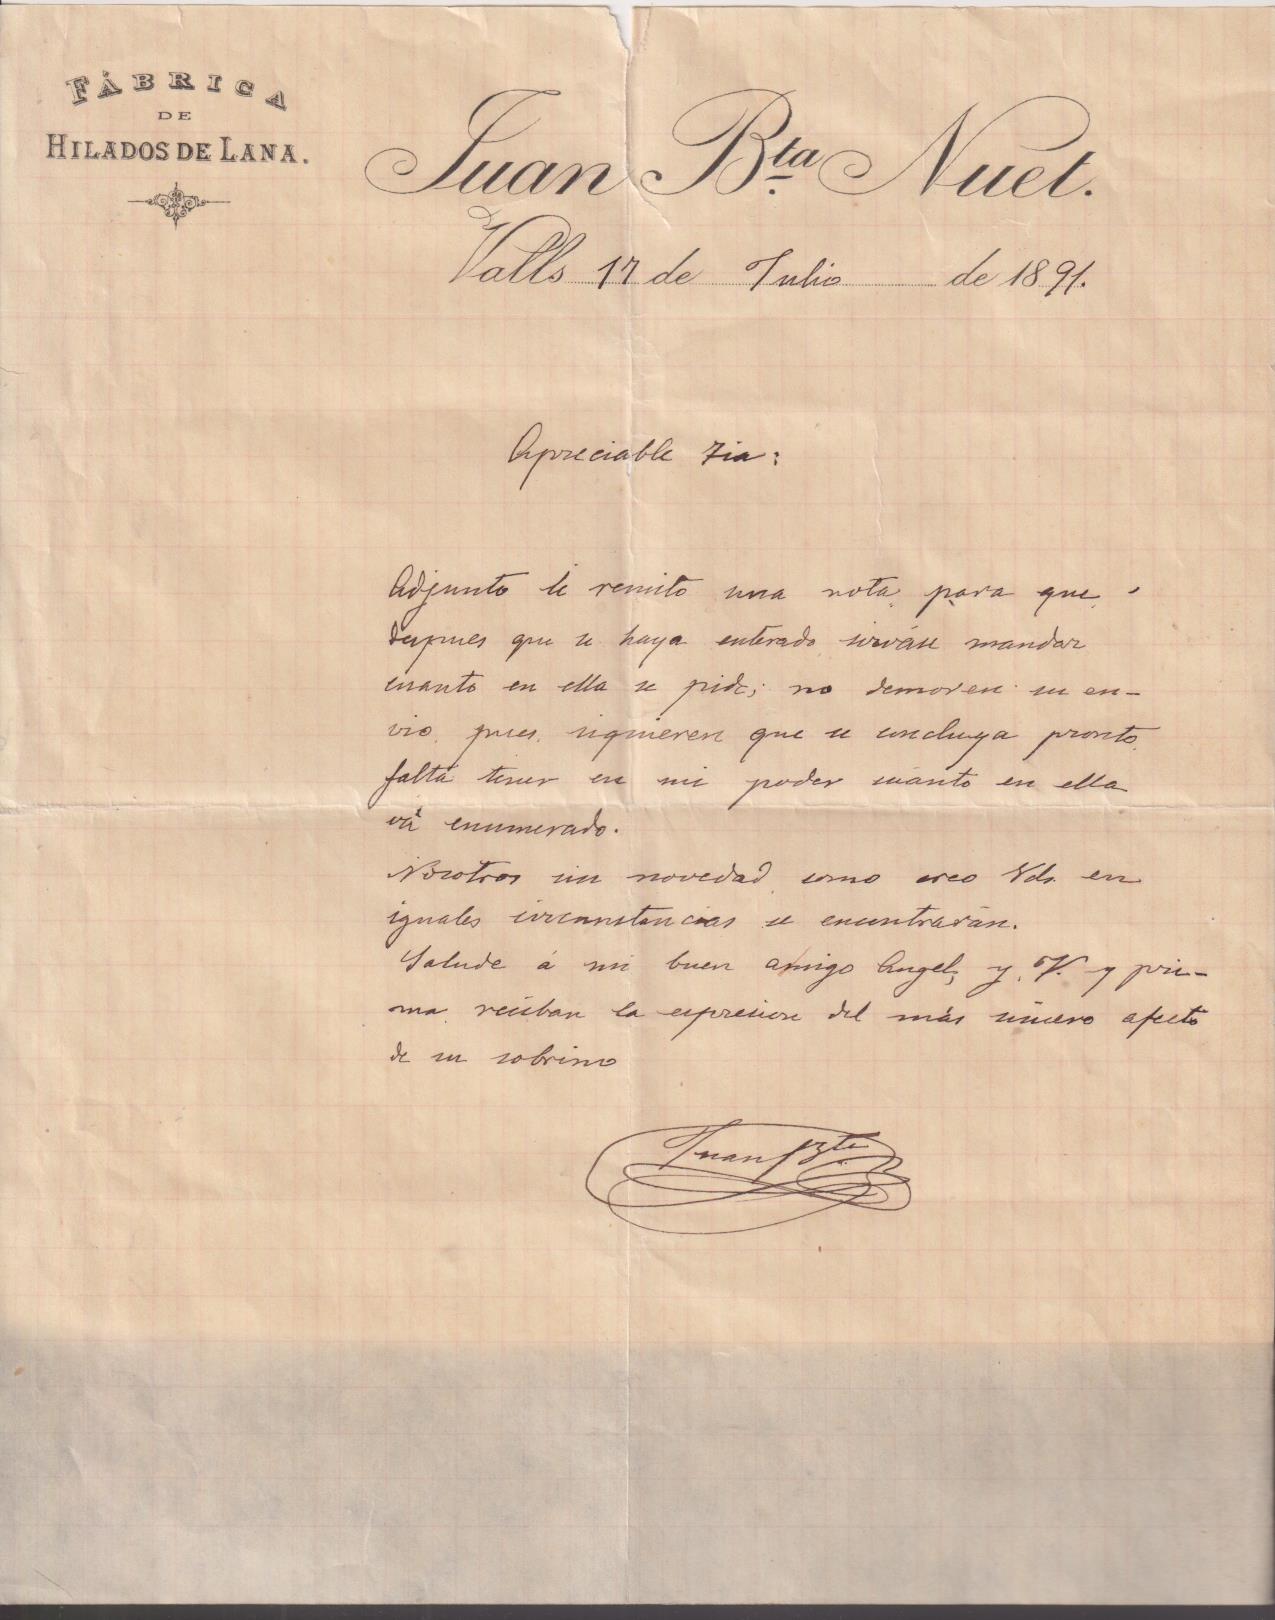 Juan Bta. Nuel. Fábrica de Hilados de lana. Carta de Pedido. Valls 17 julio 1891